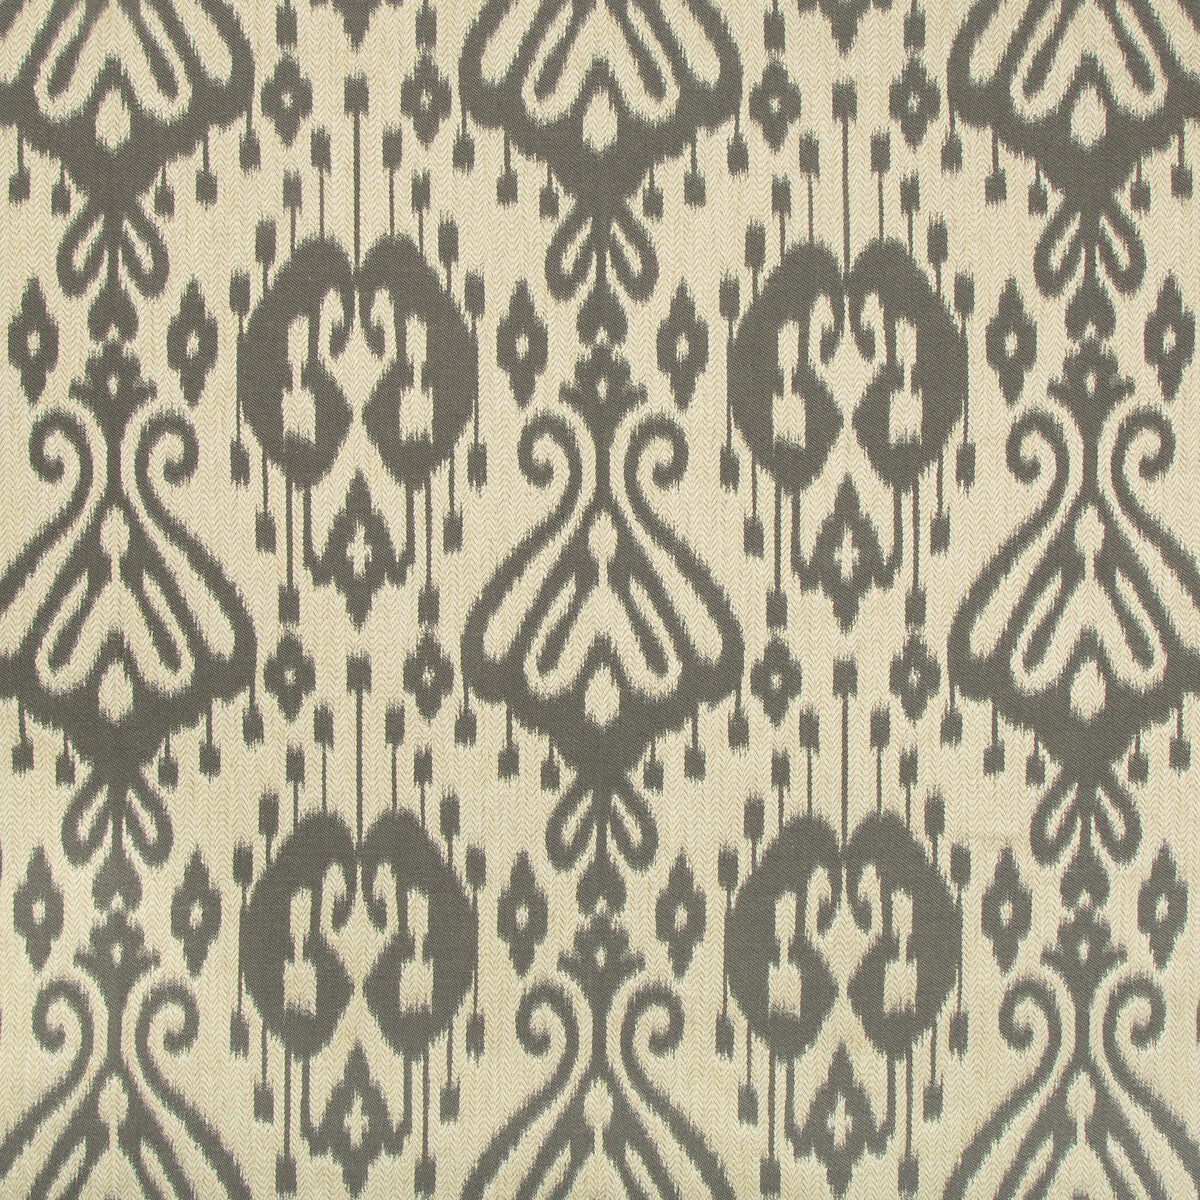 Kravet Design fabric in 35698-11 color - pattern 35698.11.0 - by Kravet Design